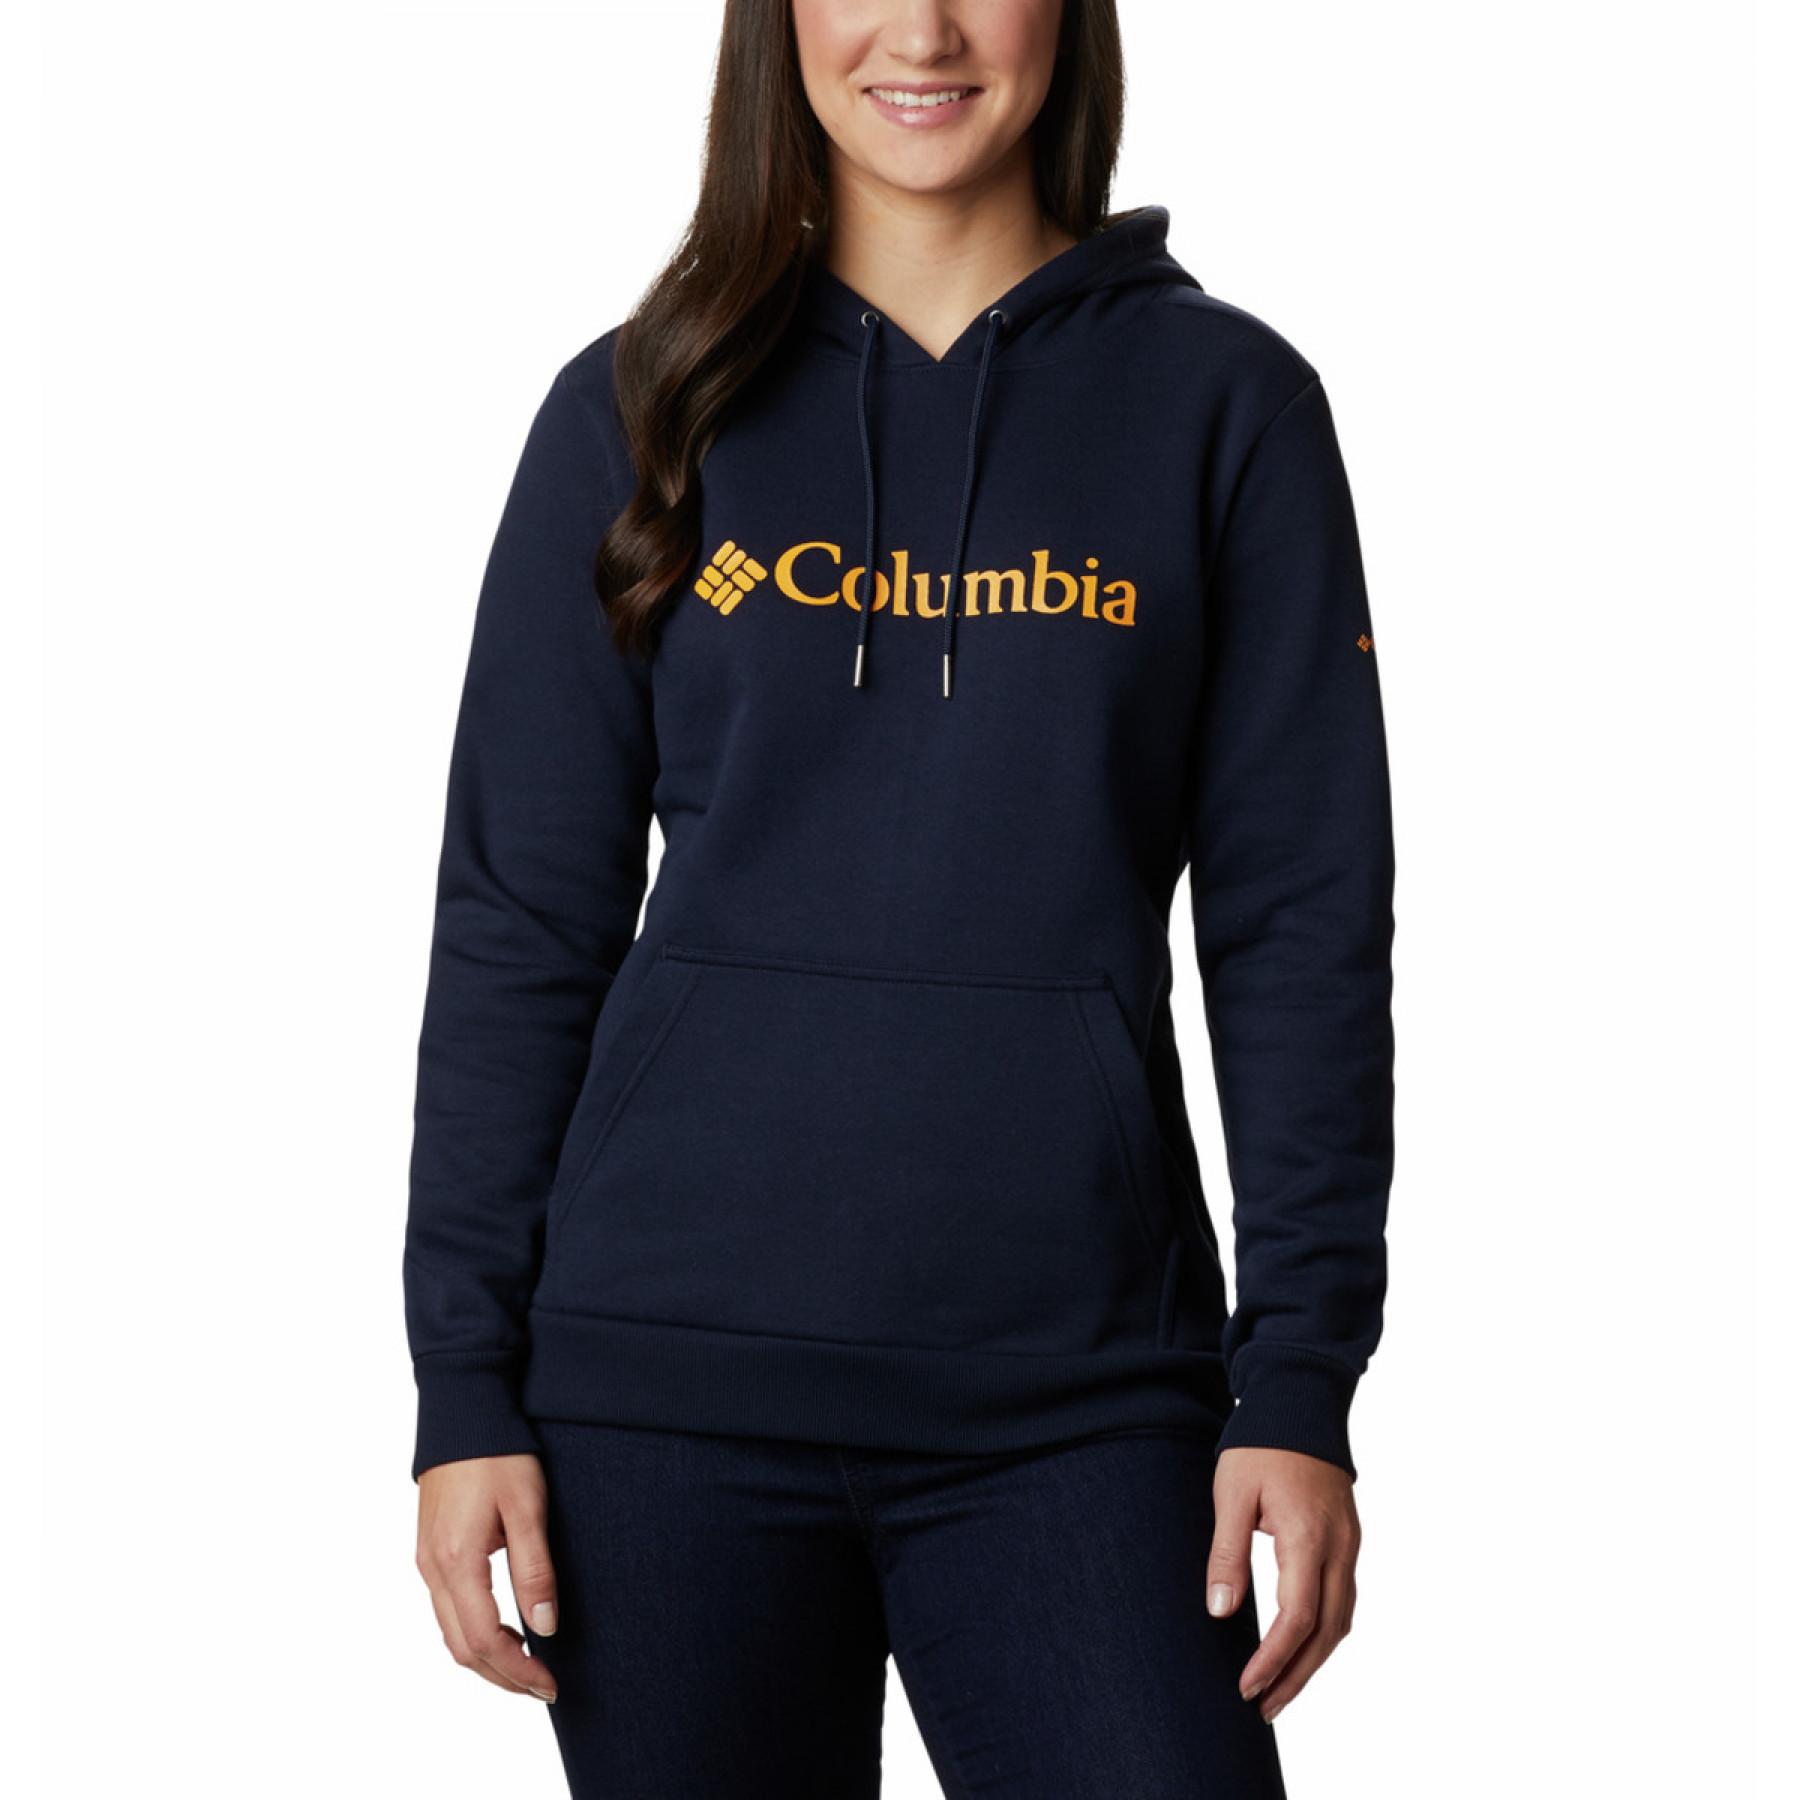 Damen-Kapuzenpulli Columbia Logo